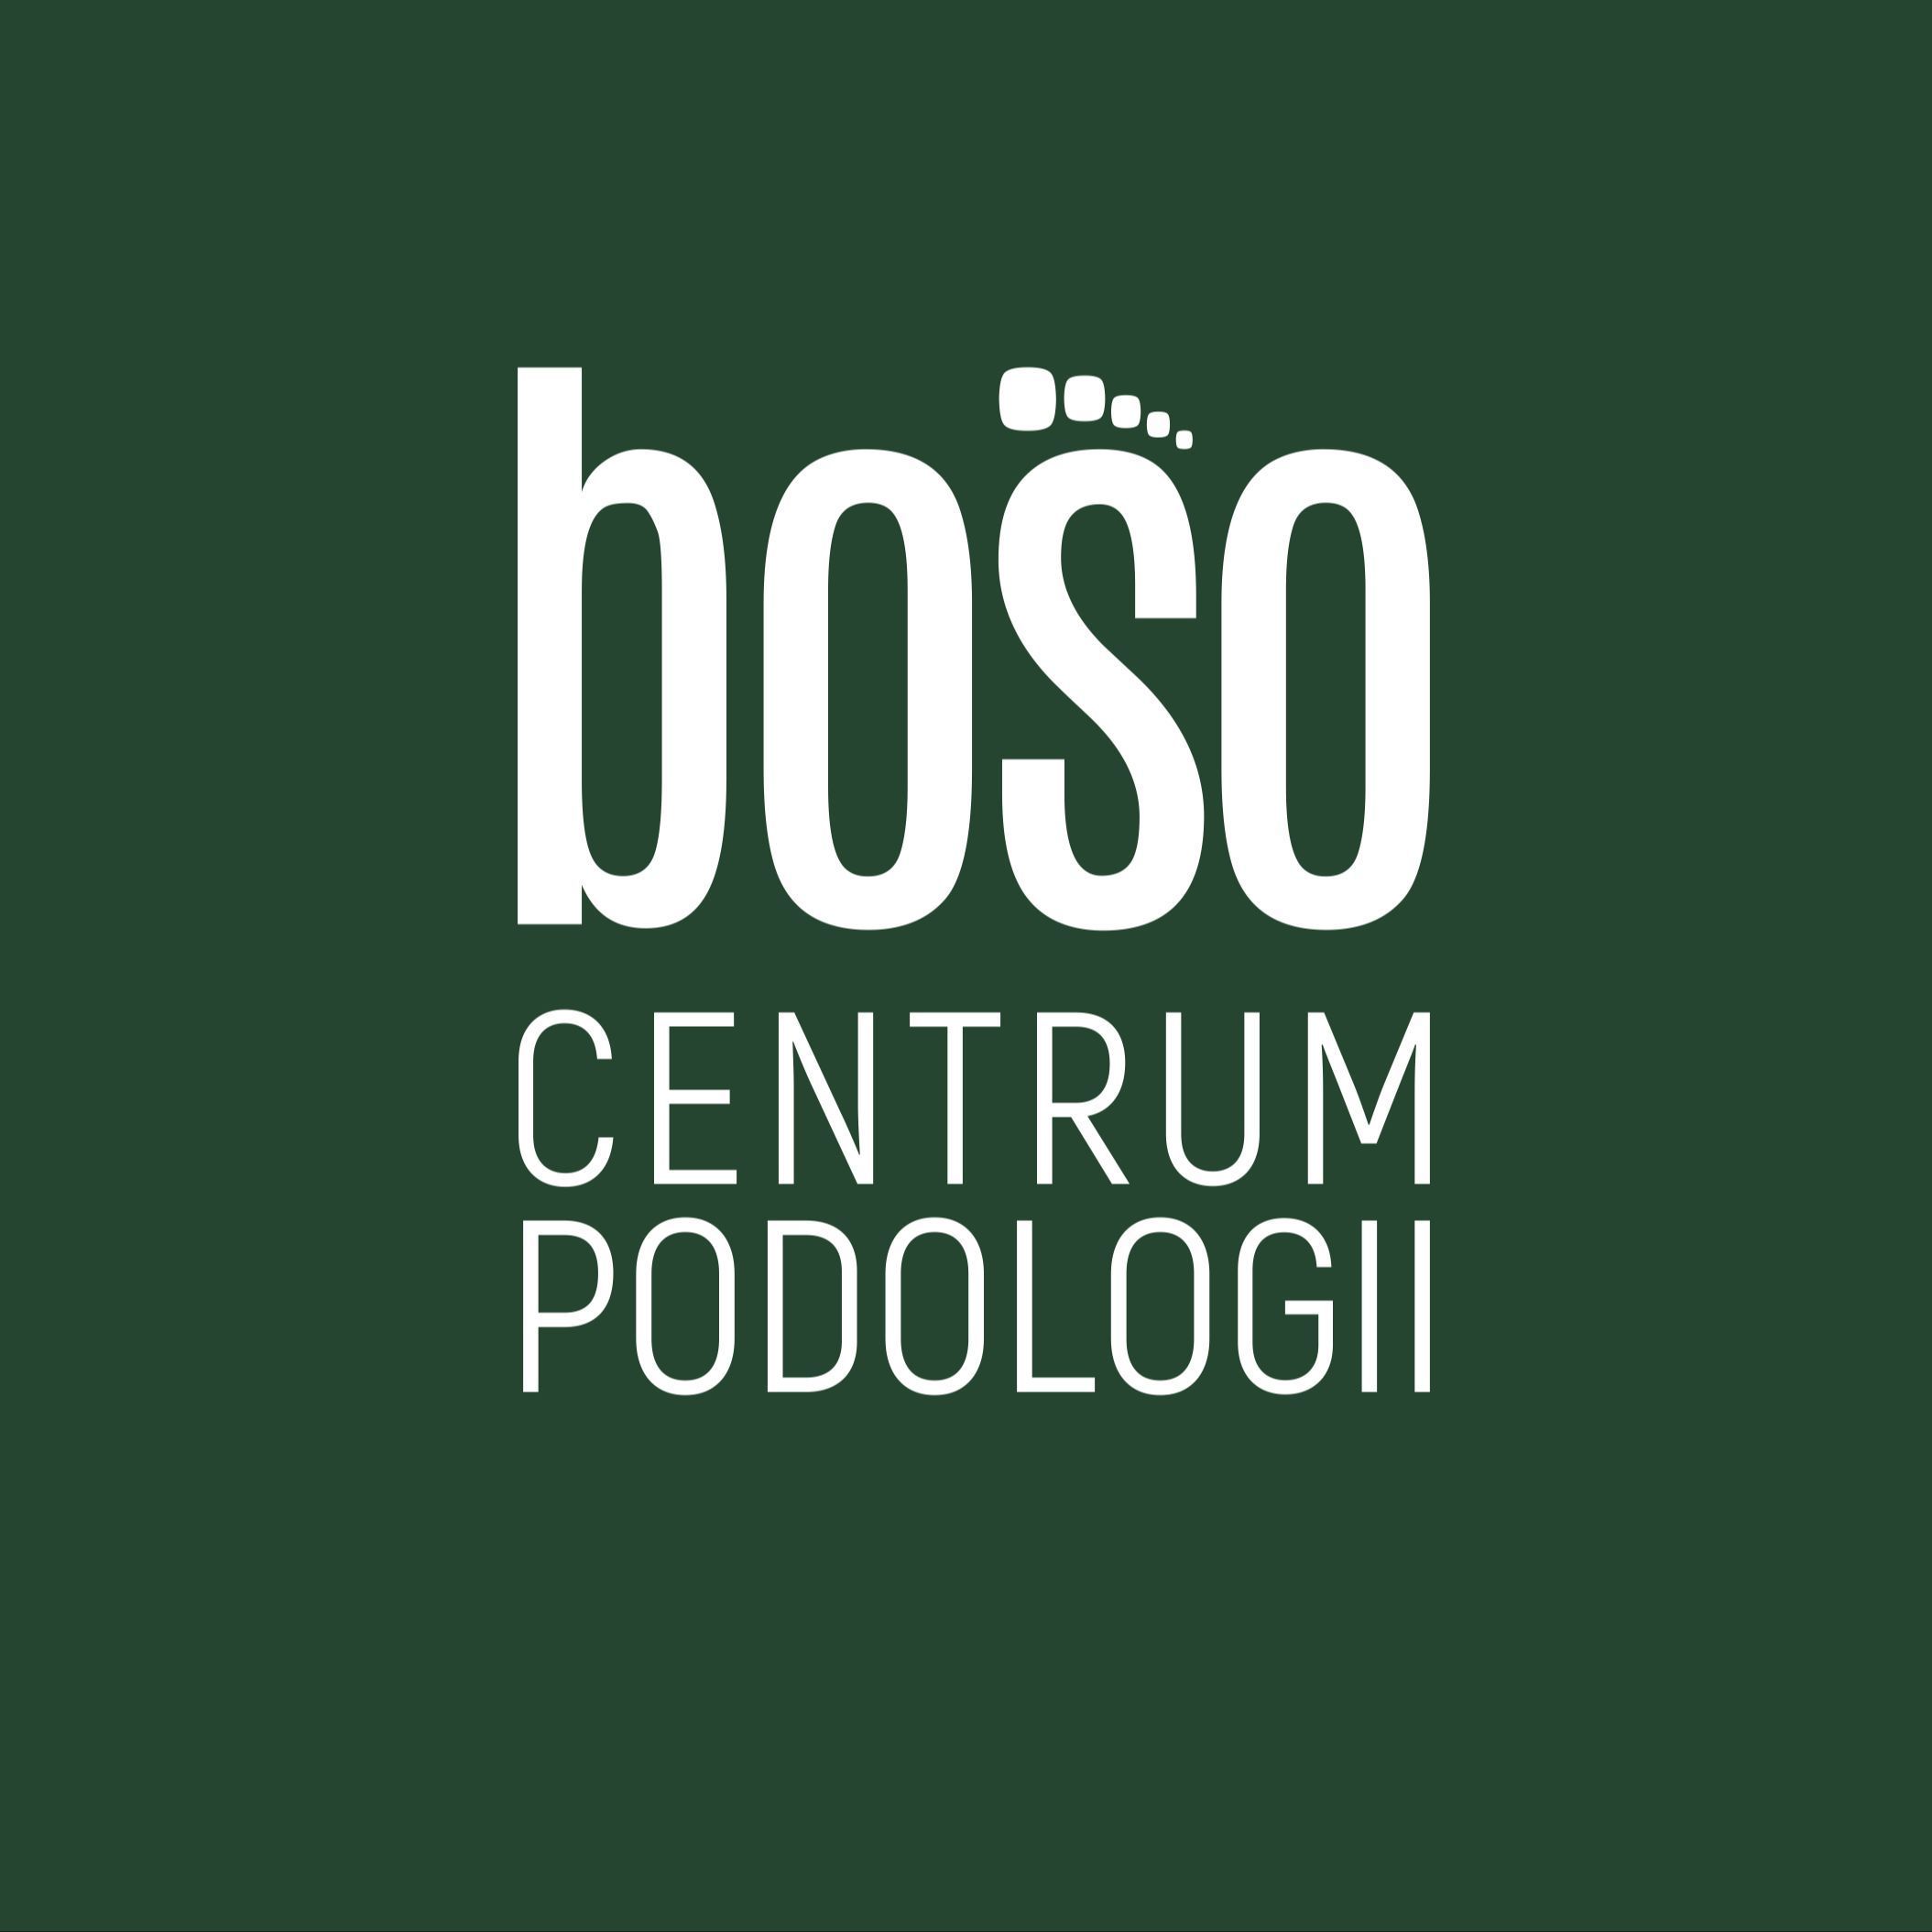 BOSO CENTRUM PODOLOGII MARTA SIKORA, Katowicka 50, 41-500, Chorzów